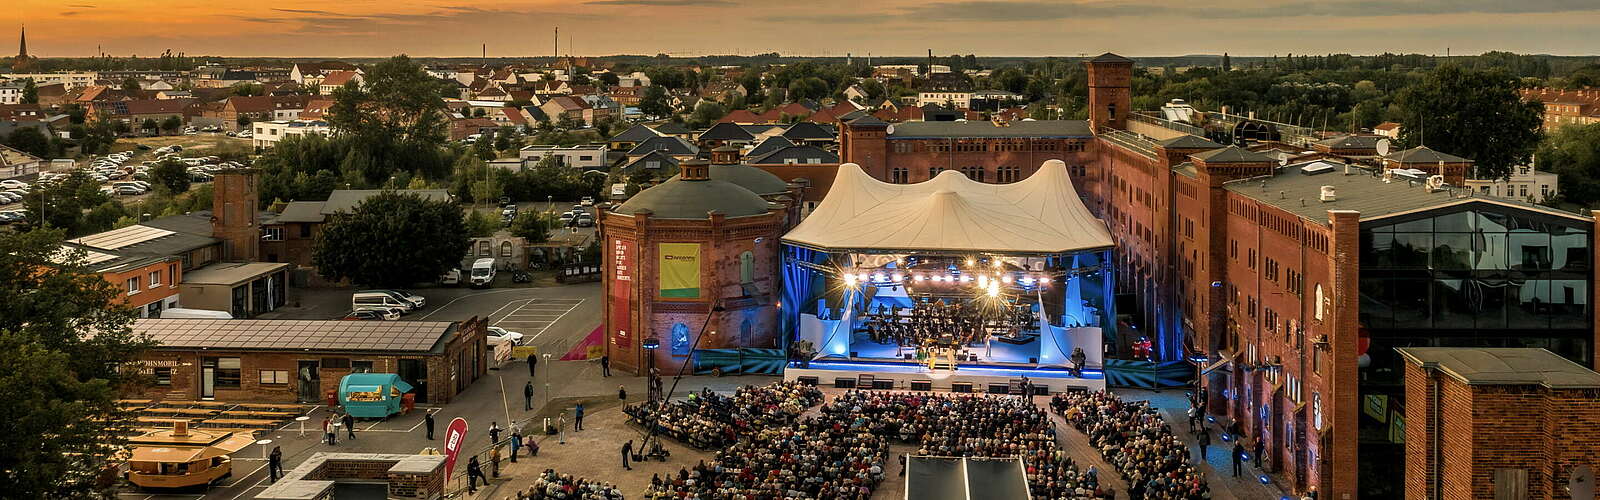 Luftaufnahme der Elblandfestspiele Wittenberge,
        
    

        Foto: Prignitzliebe/Anja Möller